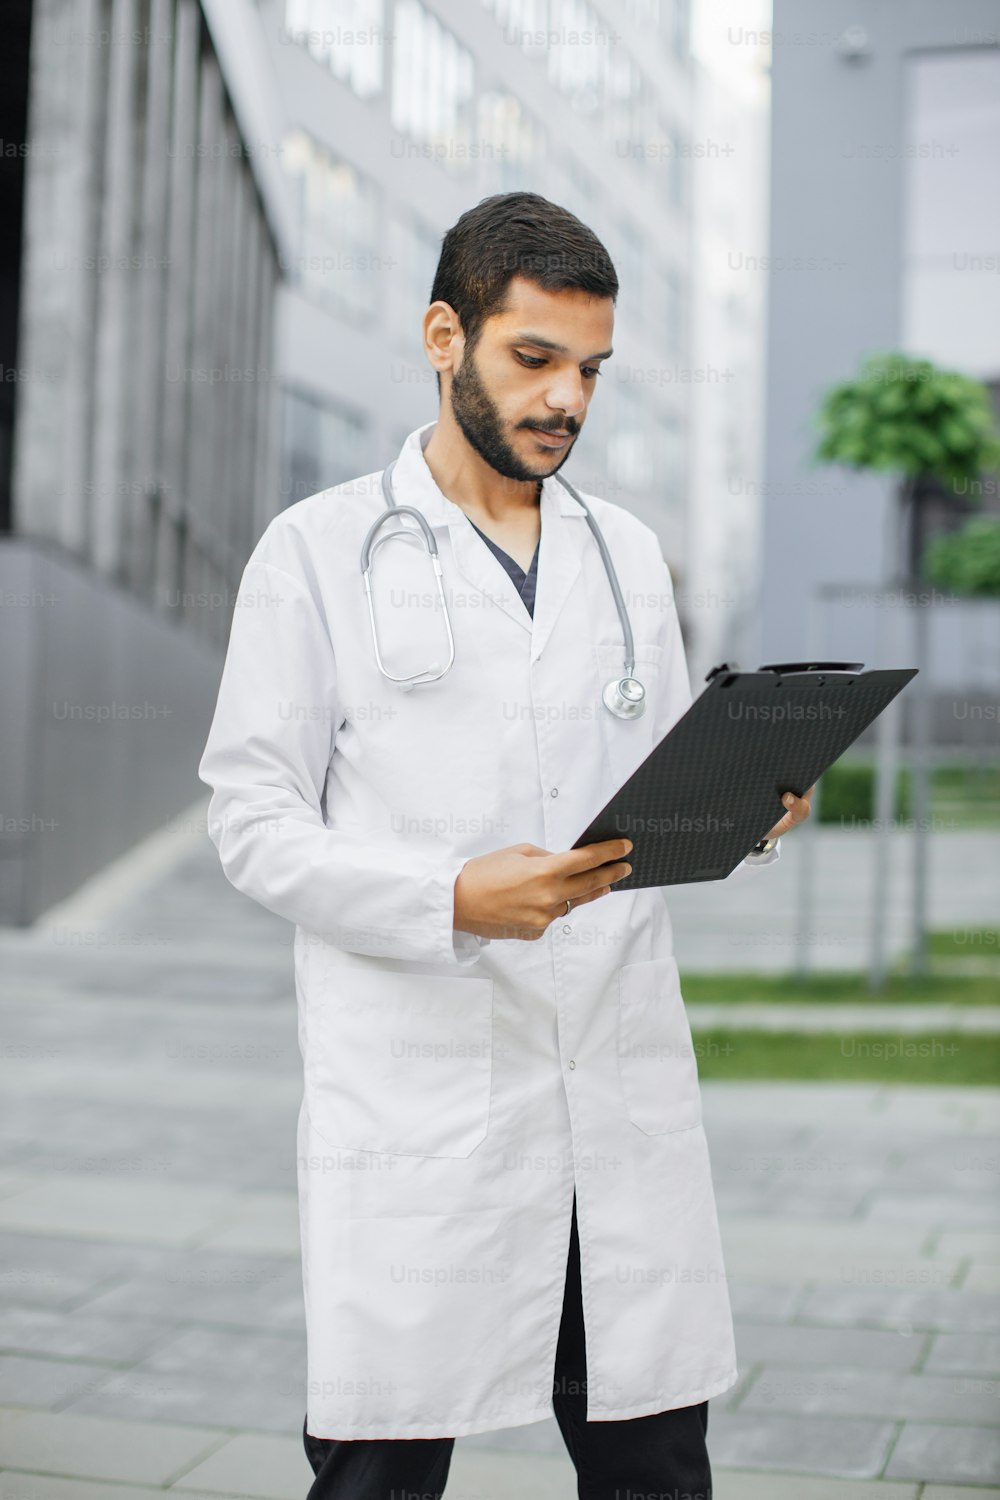 젊은 똑똑한 집중 남성 의료 인턴 의사가 폴더 클립보드의 데이터를 읽고 현대 병원 건물 밖에 서 있는 초상화. 의학, 교육 및 의료 개념